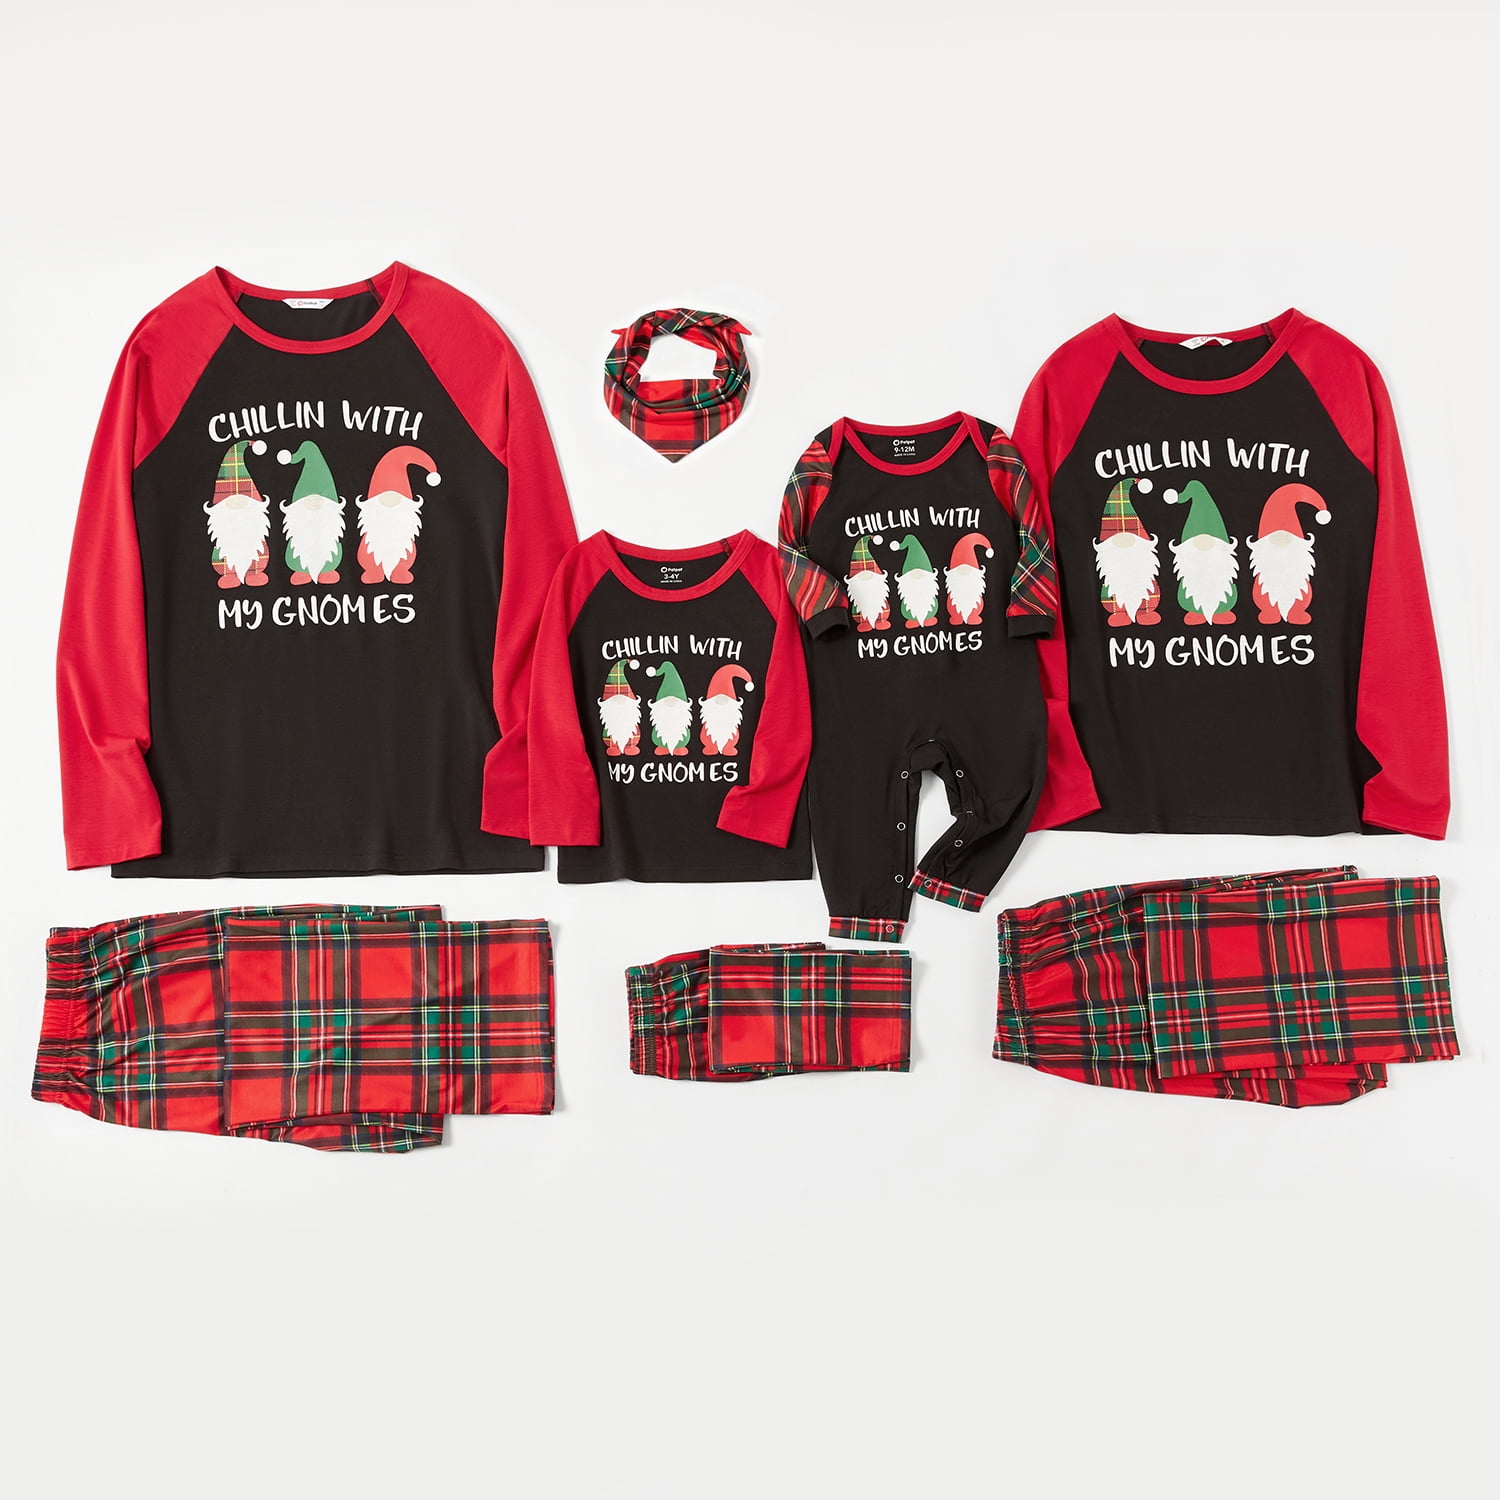 Merry Christmas Gnomes Shirt,Christmas Shirt,Family Pajamas For Christmas,Matching Shirts,Christmas Pajamas,Christmas Gift,Family Matching